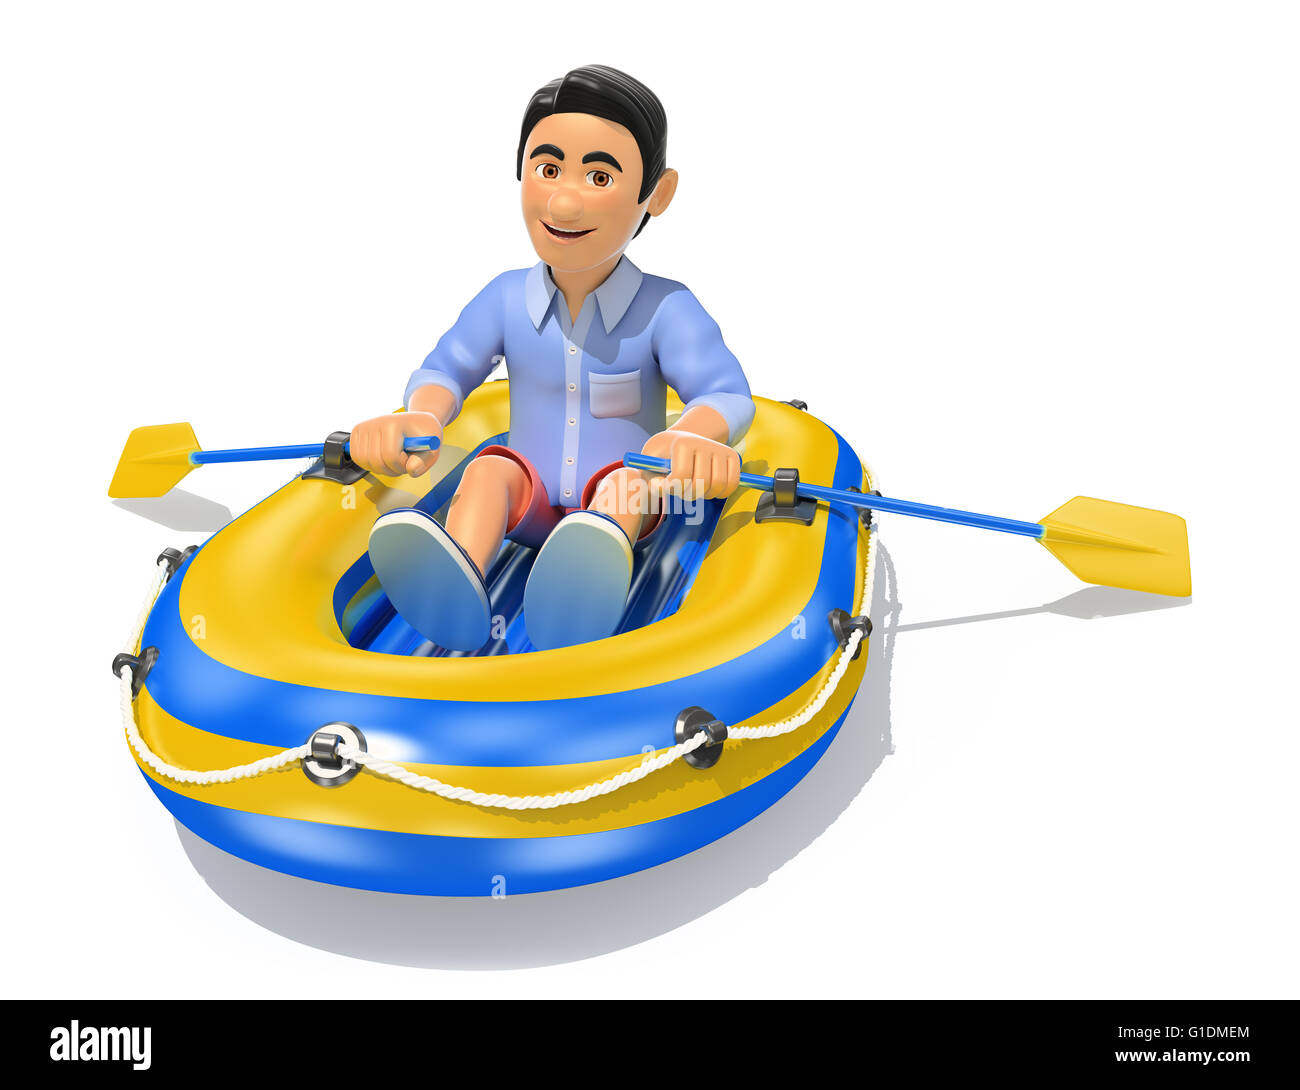 Jeunes 3d illustration. l'homme dans un petit short bateau gonflable. isolé sur fond blanc. Banque D'Images